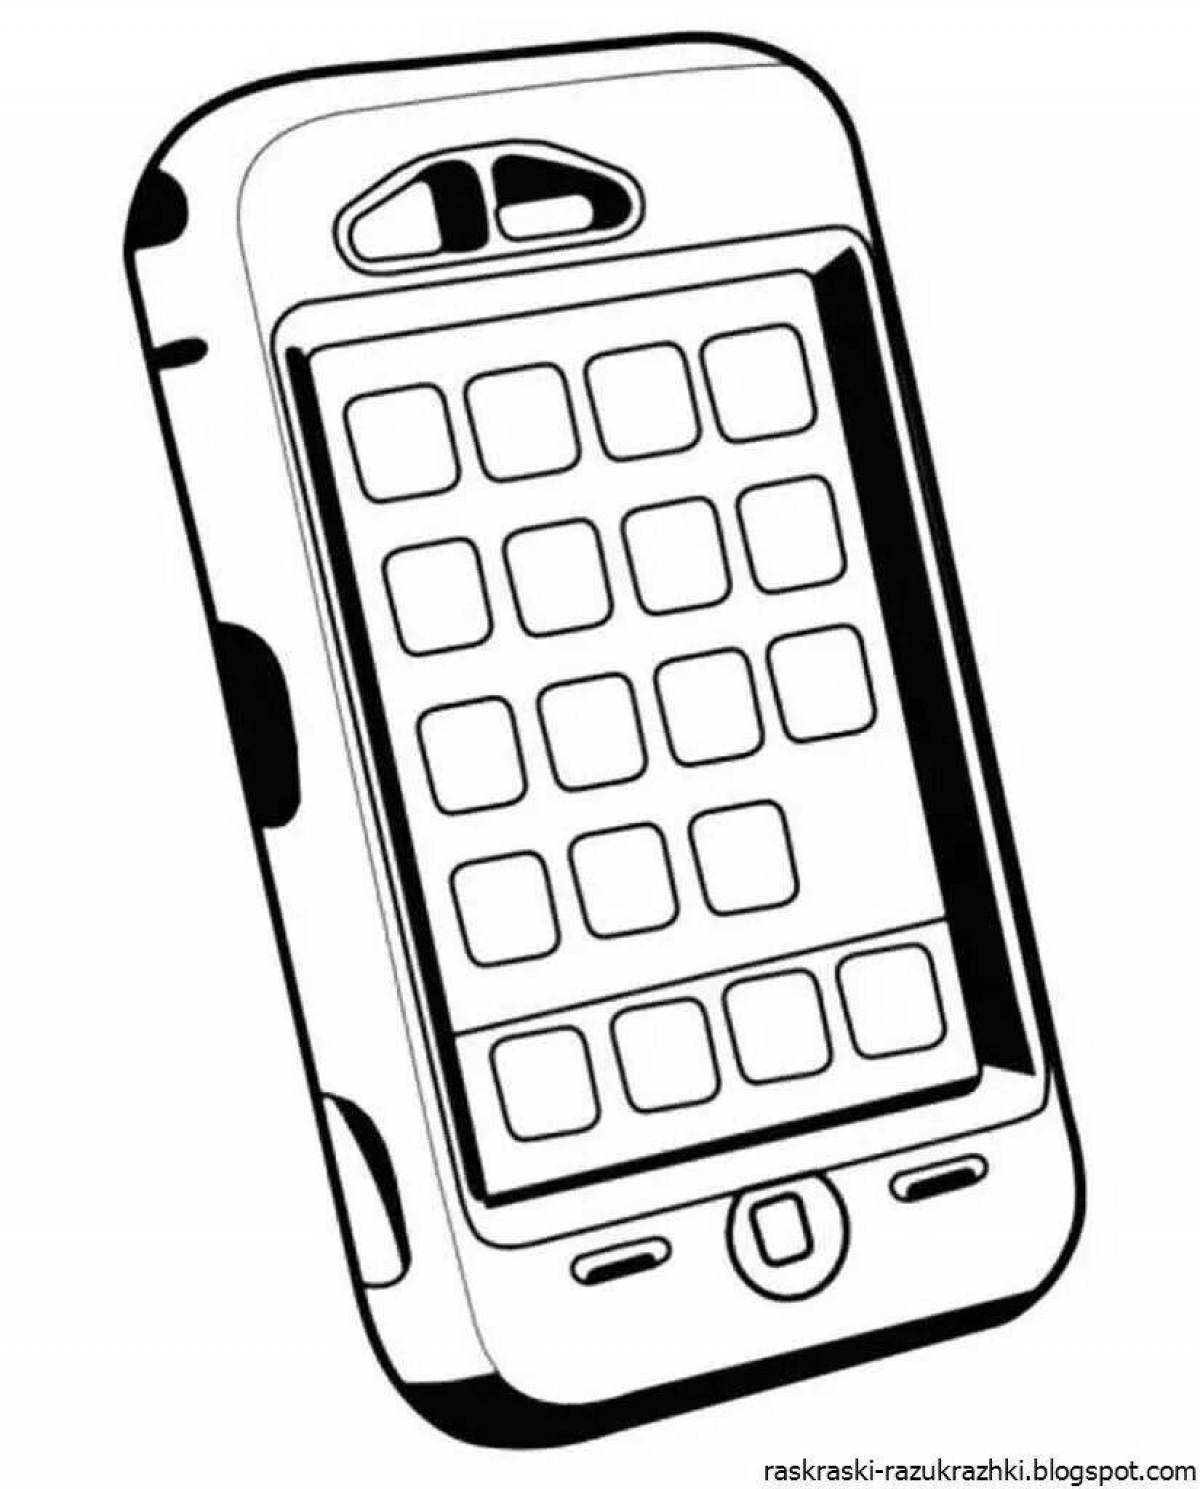 Гипнотическая страница раскраски мобильного телефона